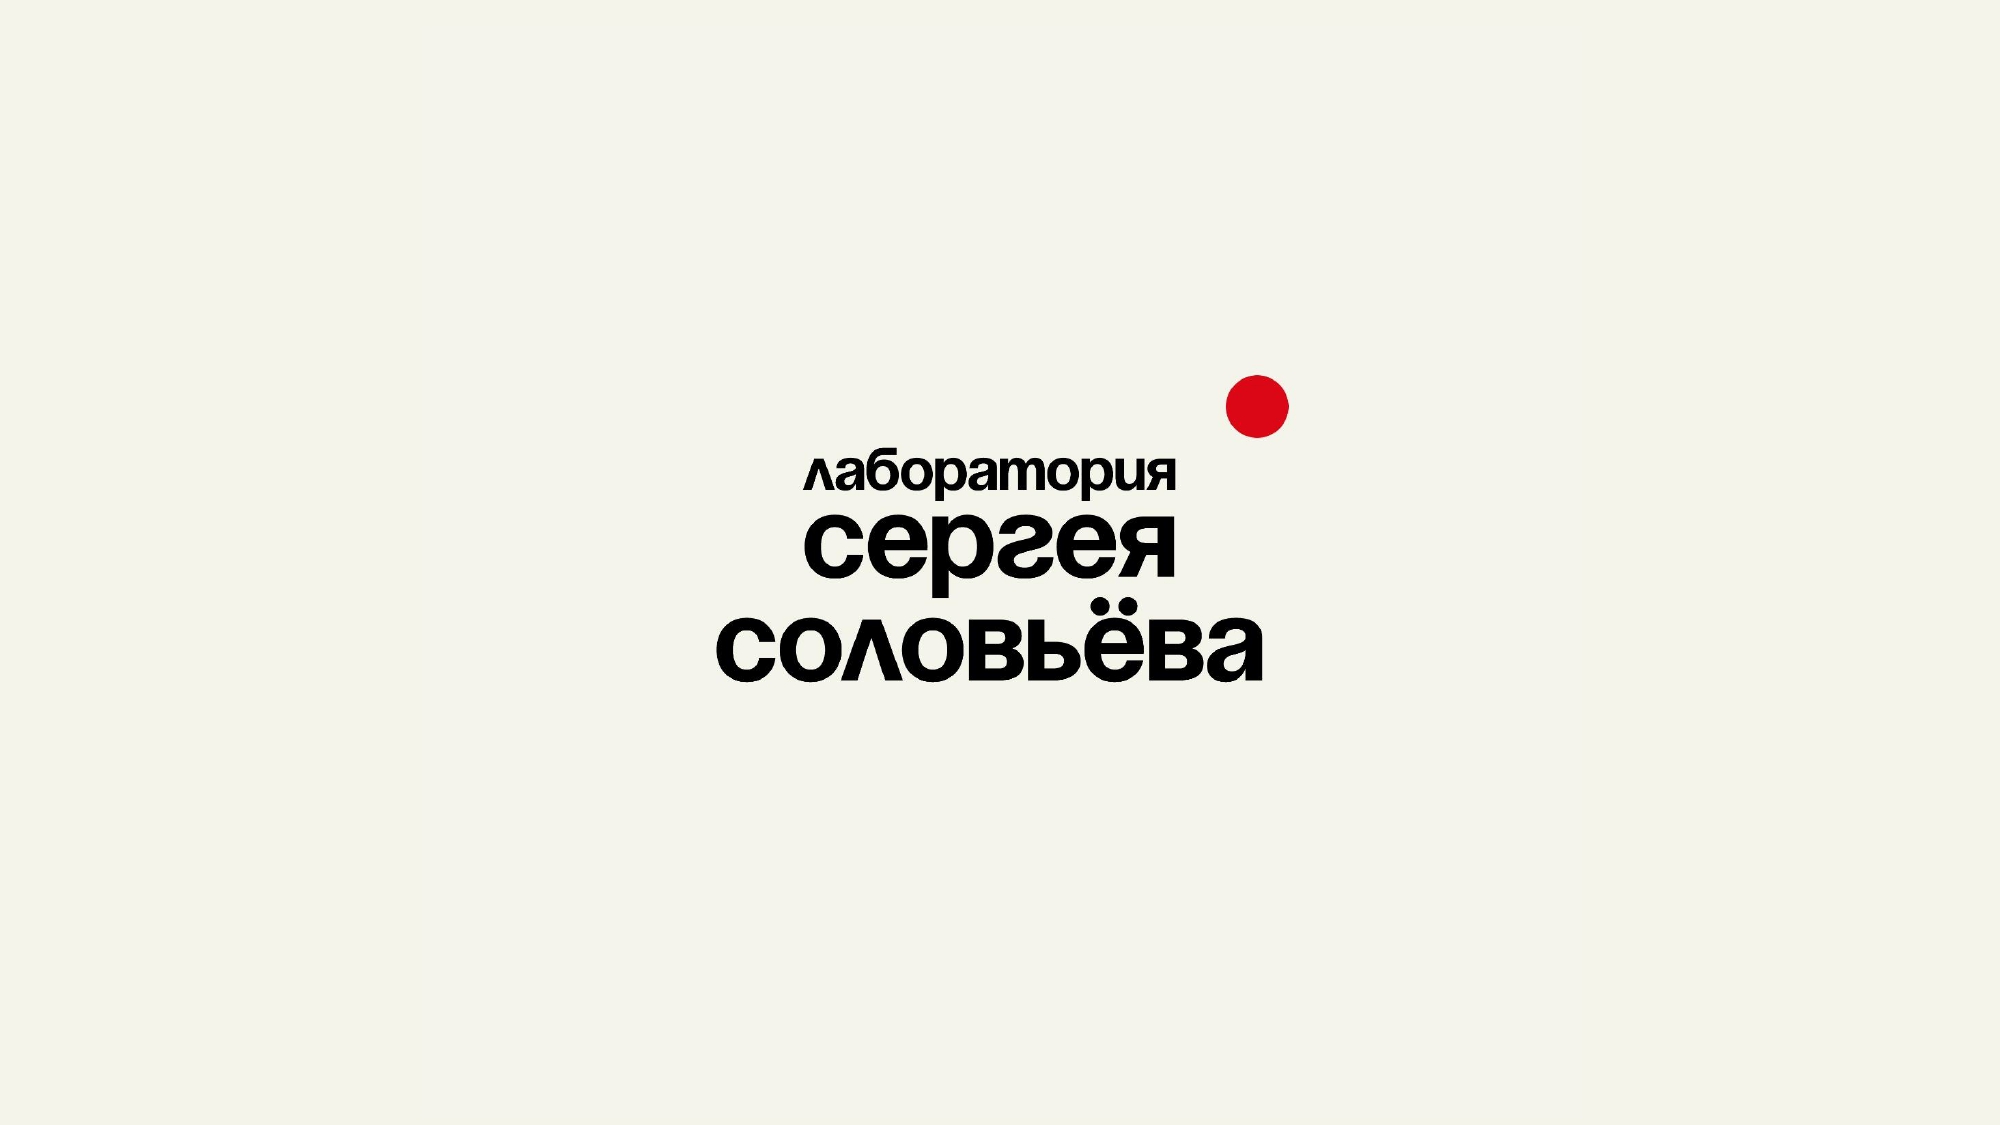 Открытие лаборатории президента фестиваля "Дух огня" состоялось накануне в Москве